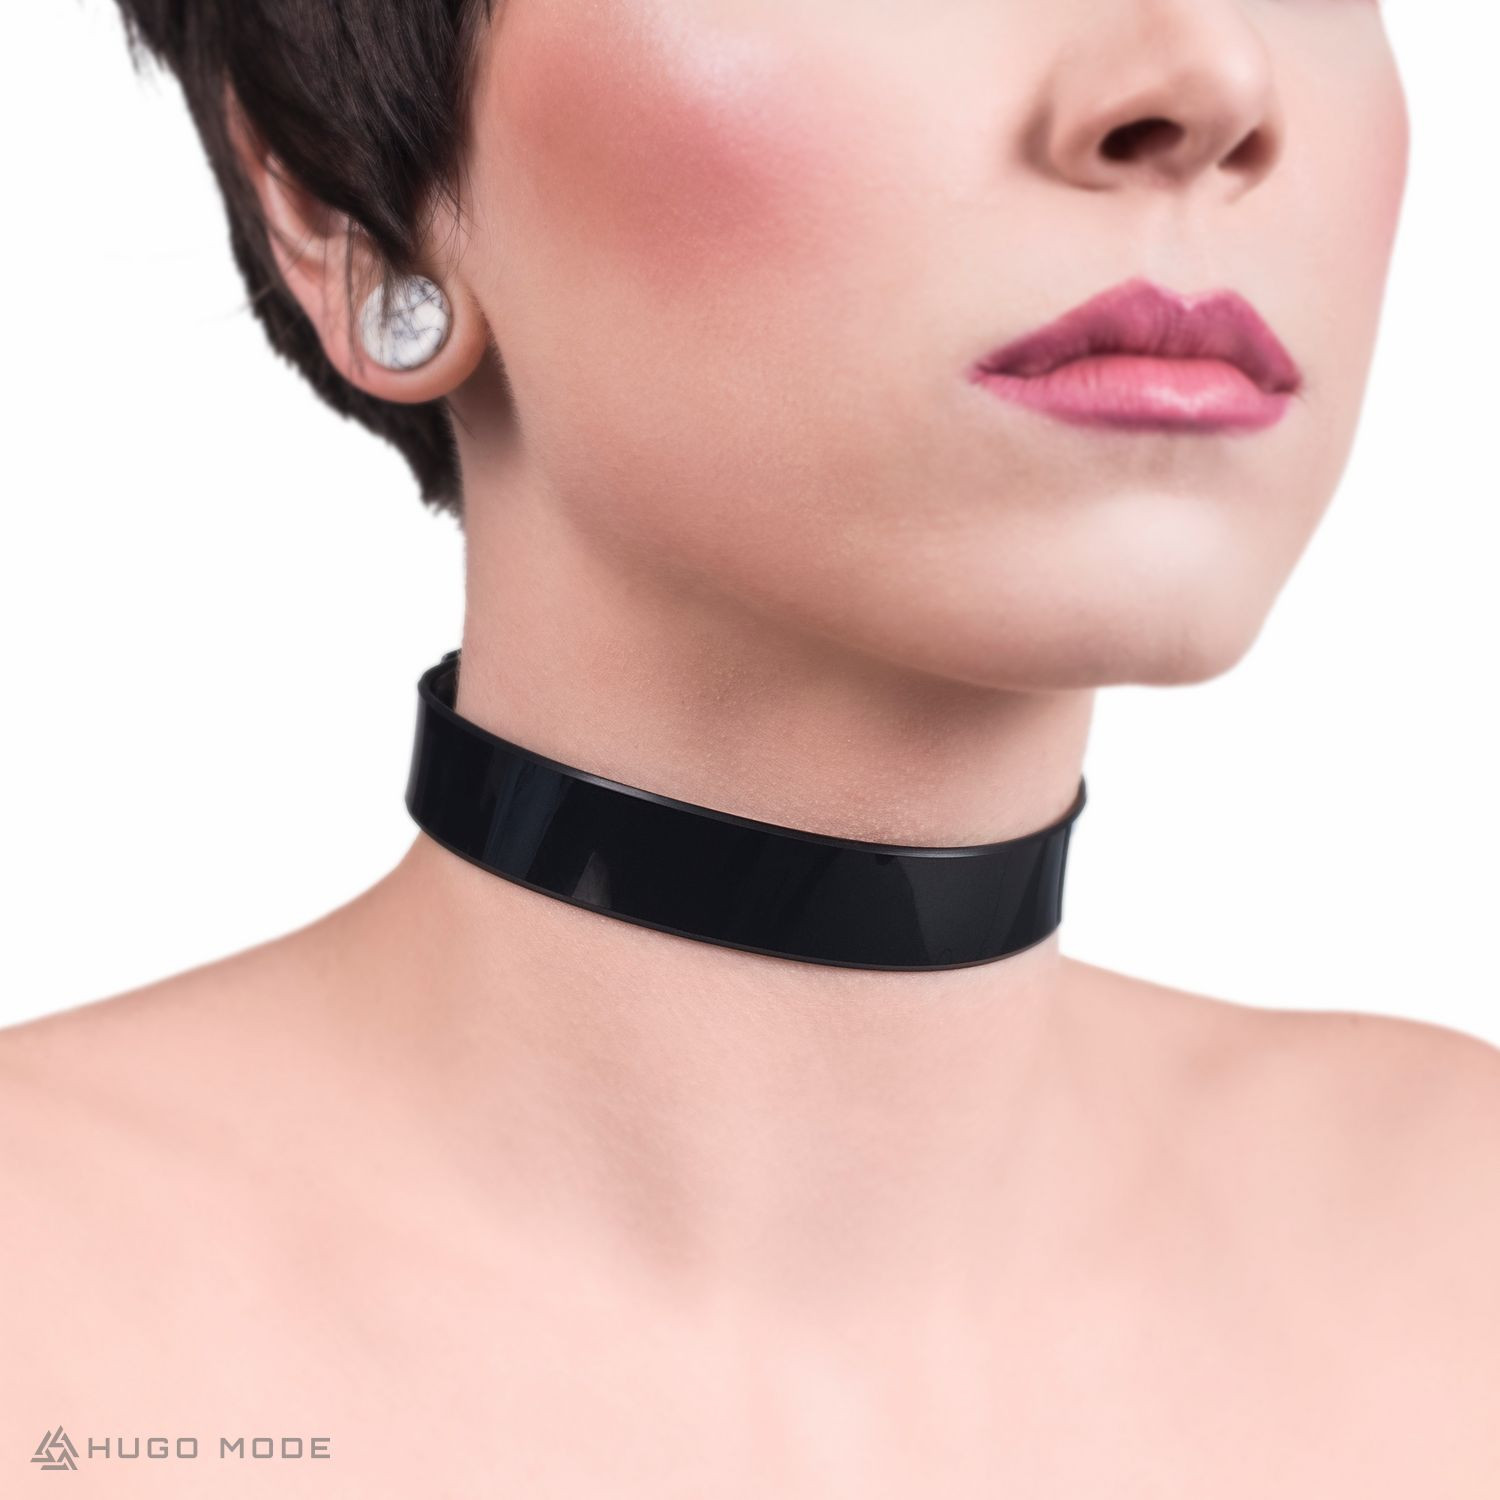 Ein dünnes Choker Halsband mit einfachem Design aus PVC.